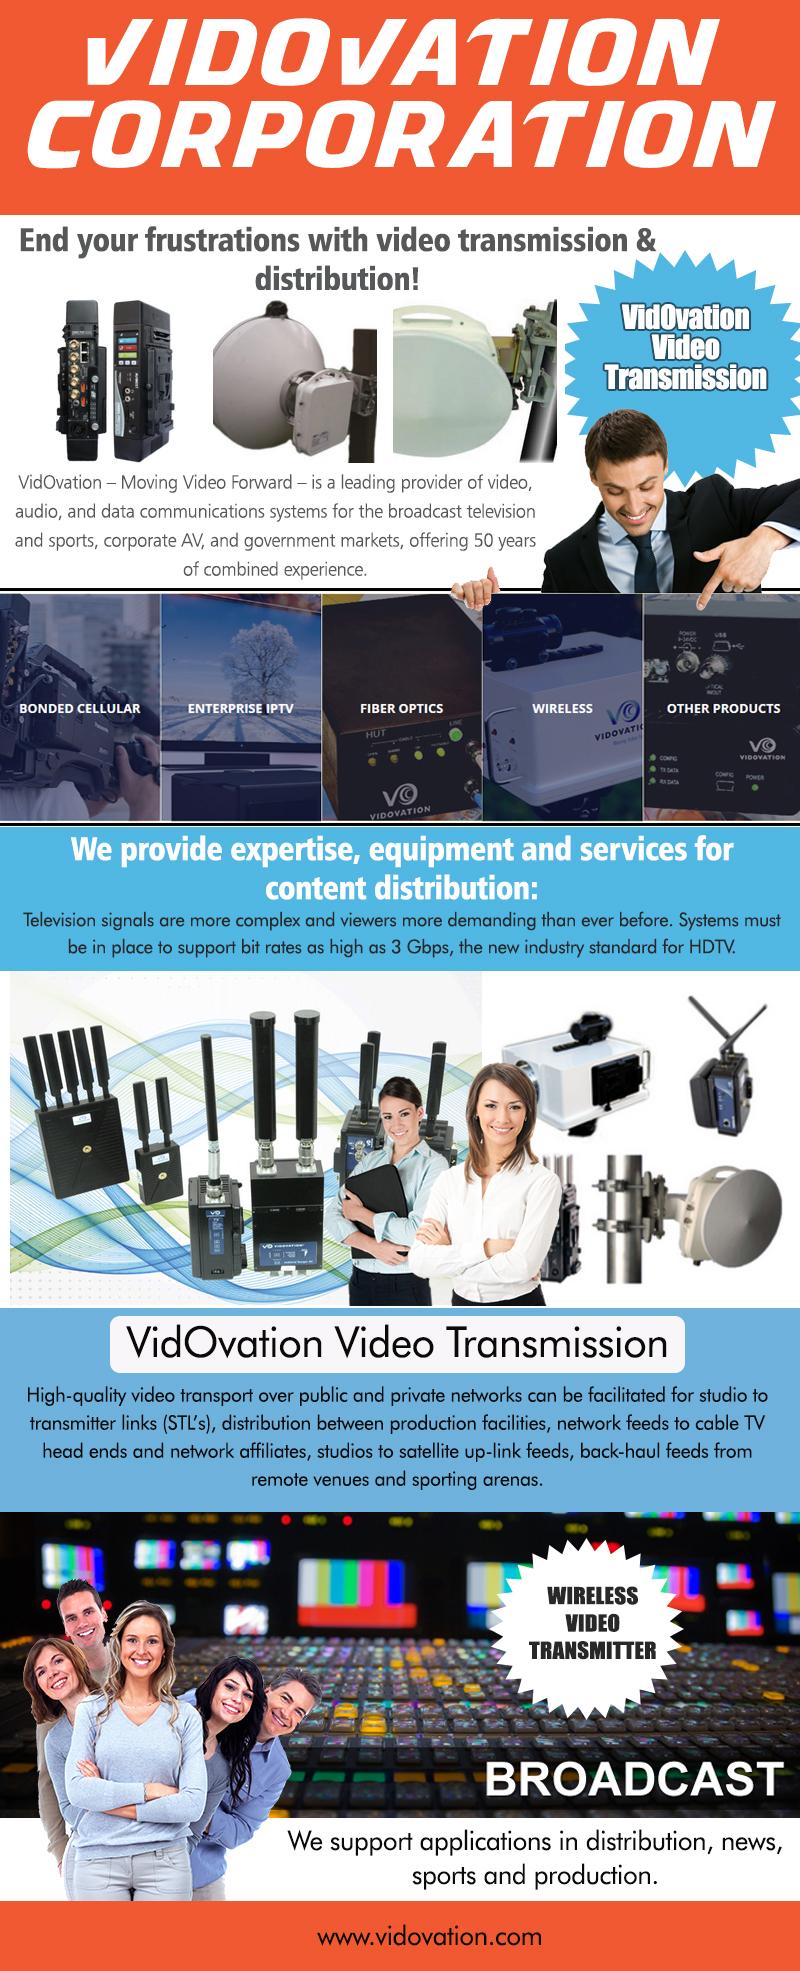 VidOvation Video Distribution